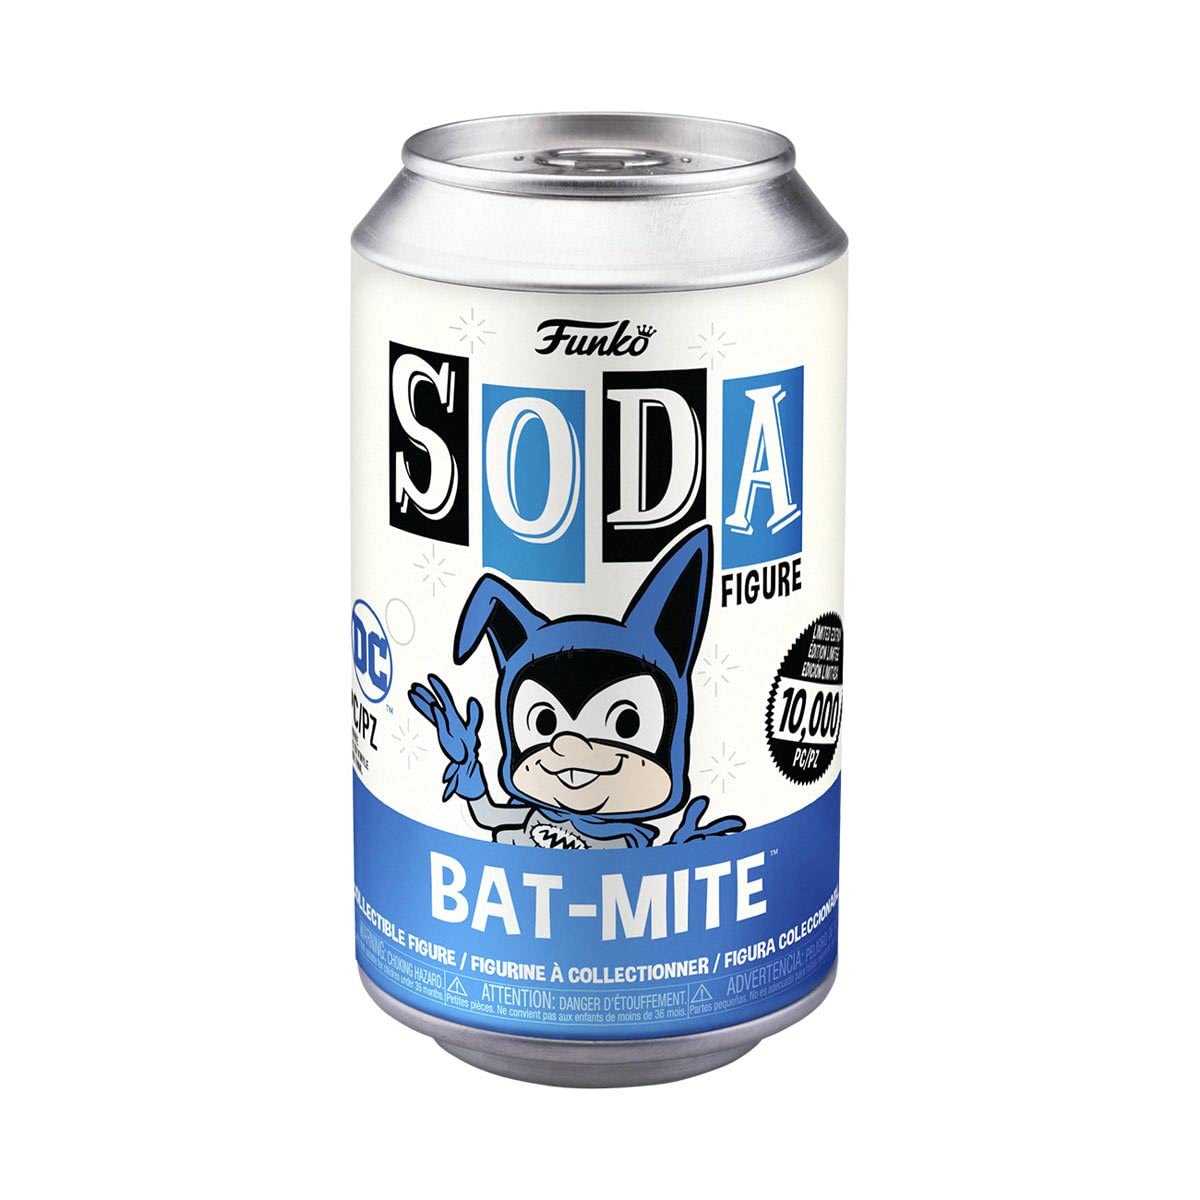 Funko Soda DC Comics Bat-Mite 4.25" Vinyl Figure in a Can